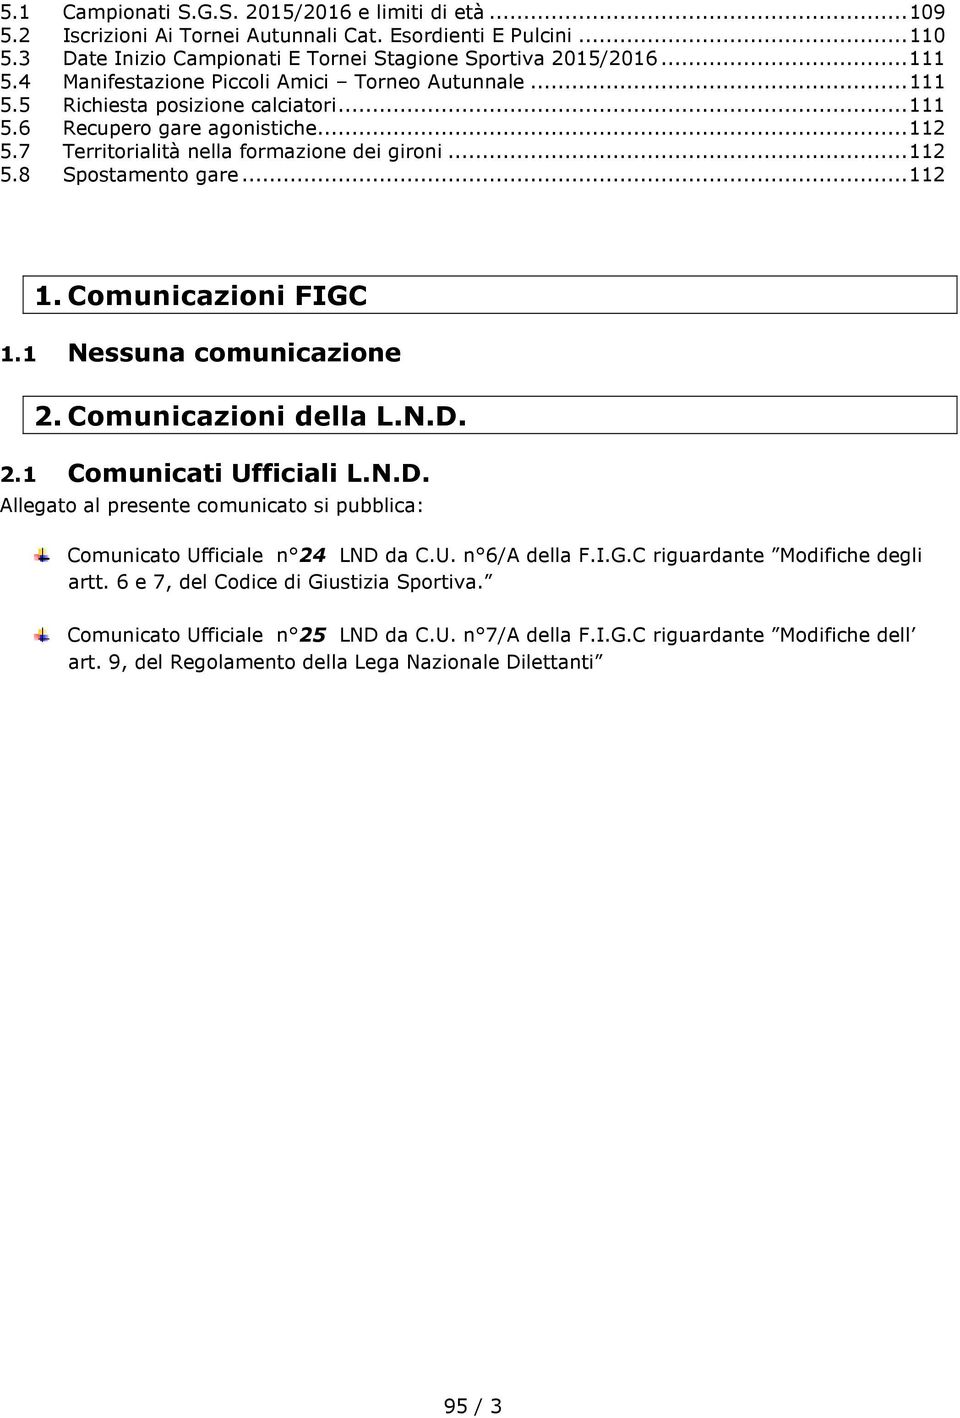 .. 112 1. Comunicazioni FIGC 1.1 Nessuna comunicazione 2. Comunicazioni della L.N.D. 2.1 Comunicati Ufficiali L.N.D. Allegato al presente comunicato si pubblica: Comunicato Ufficiale n 24 LND da C.U. n 6/A della F.